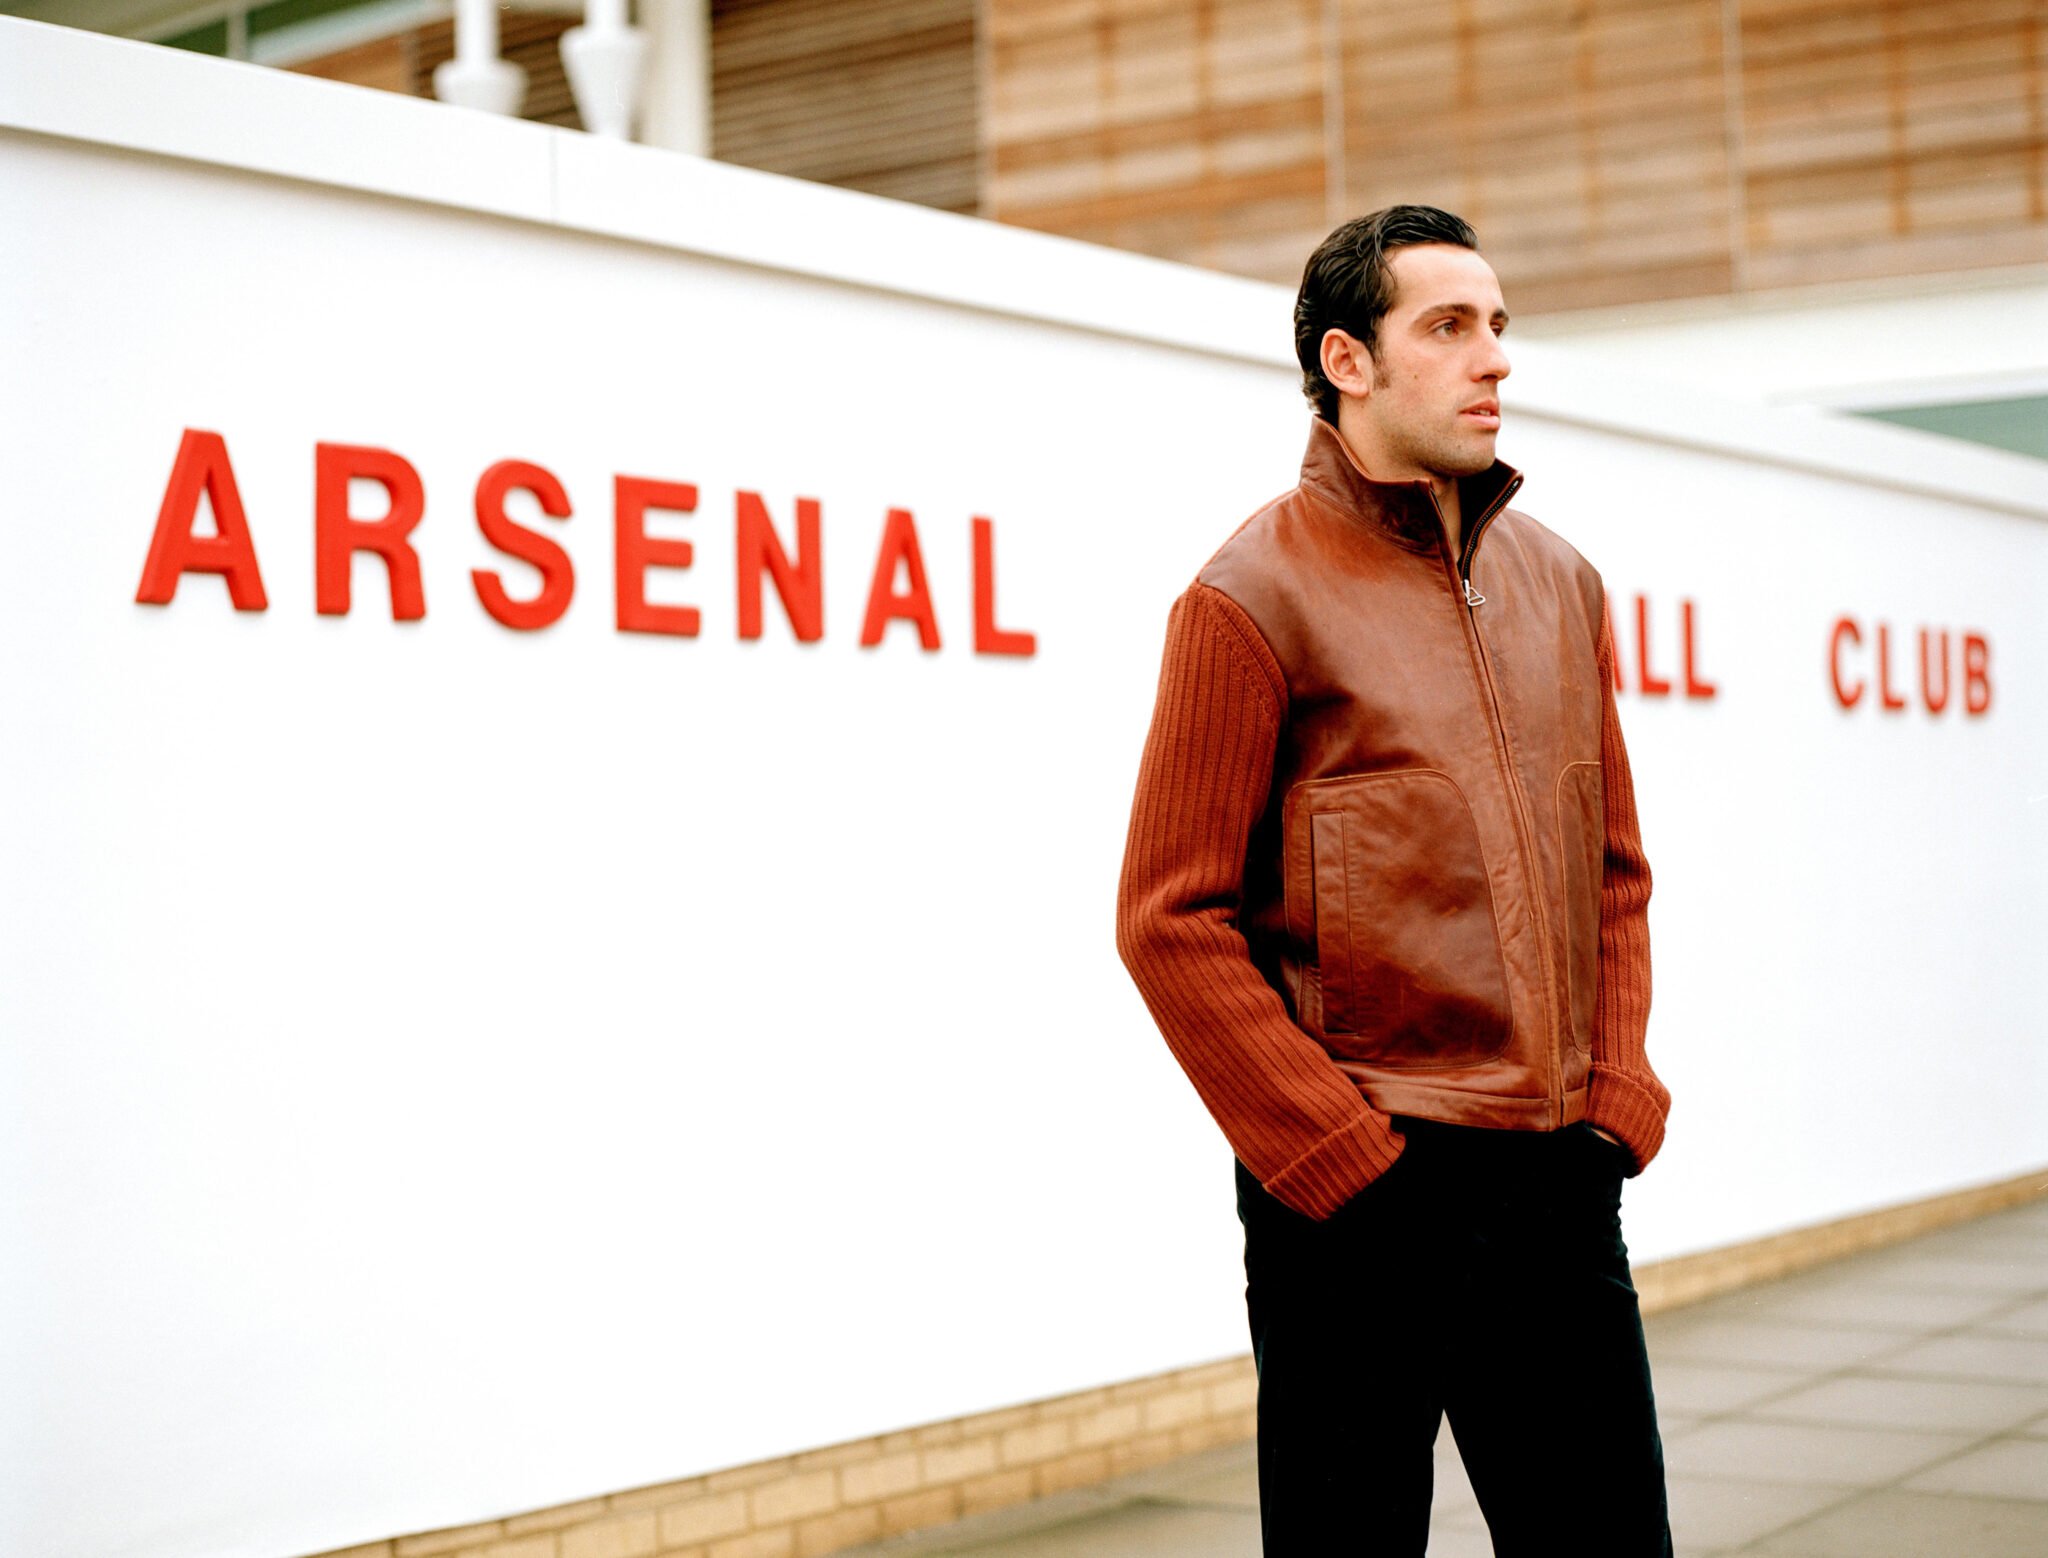 Giám đốc kỹ thuật đầu tiên của Arsenal Edu Gaspar đã làm được những gì (P1) hình ảnh gốc 2